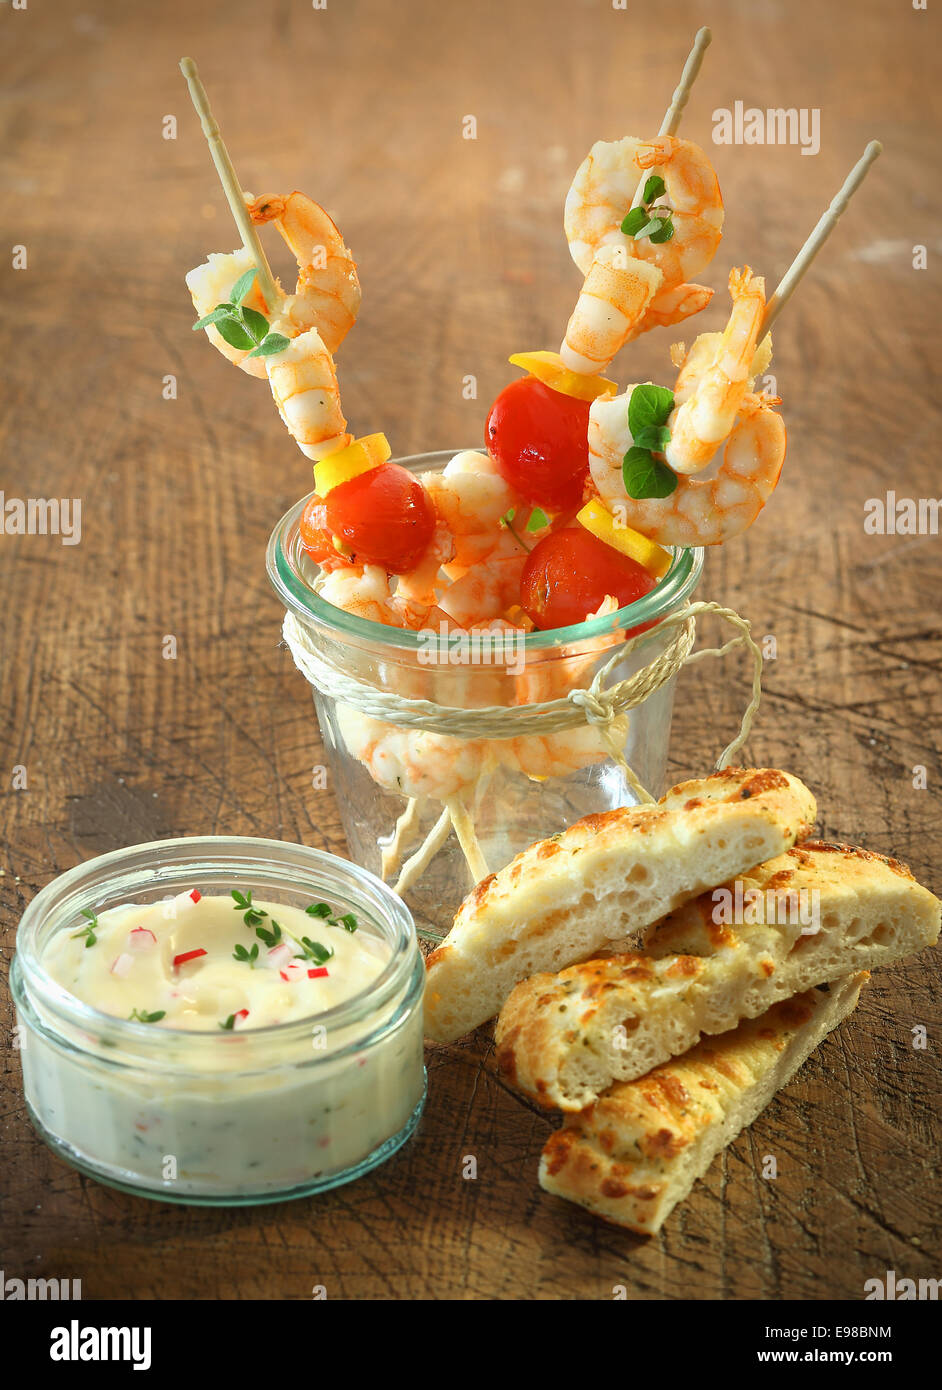 Leckere Vorspeisen, Fisch und Meeresfrüchte cocktail-sticks mit Shrimps, Käse und Tomaten stehen in einem Glas neben frische Focaccia Brot und eine Wanne mit Tartare sauce Stockfoto